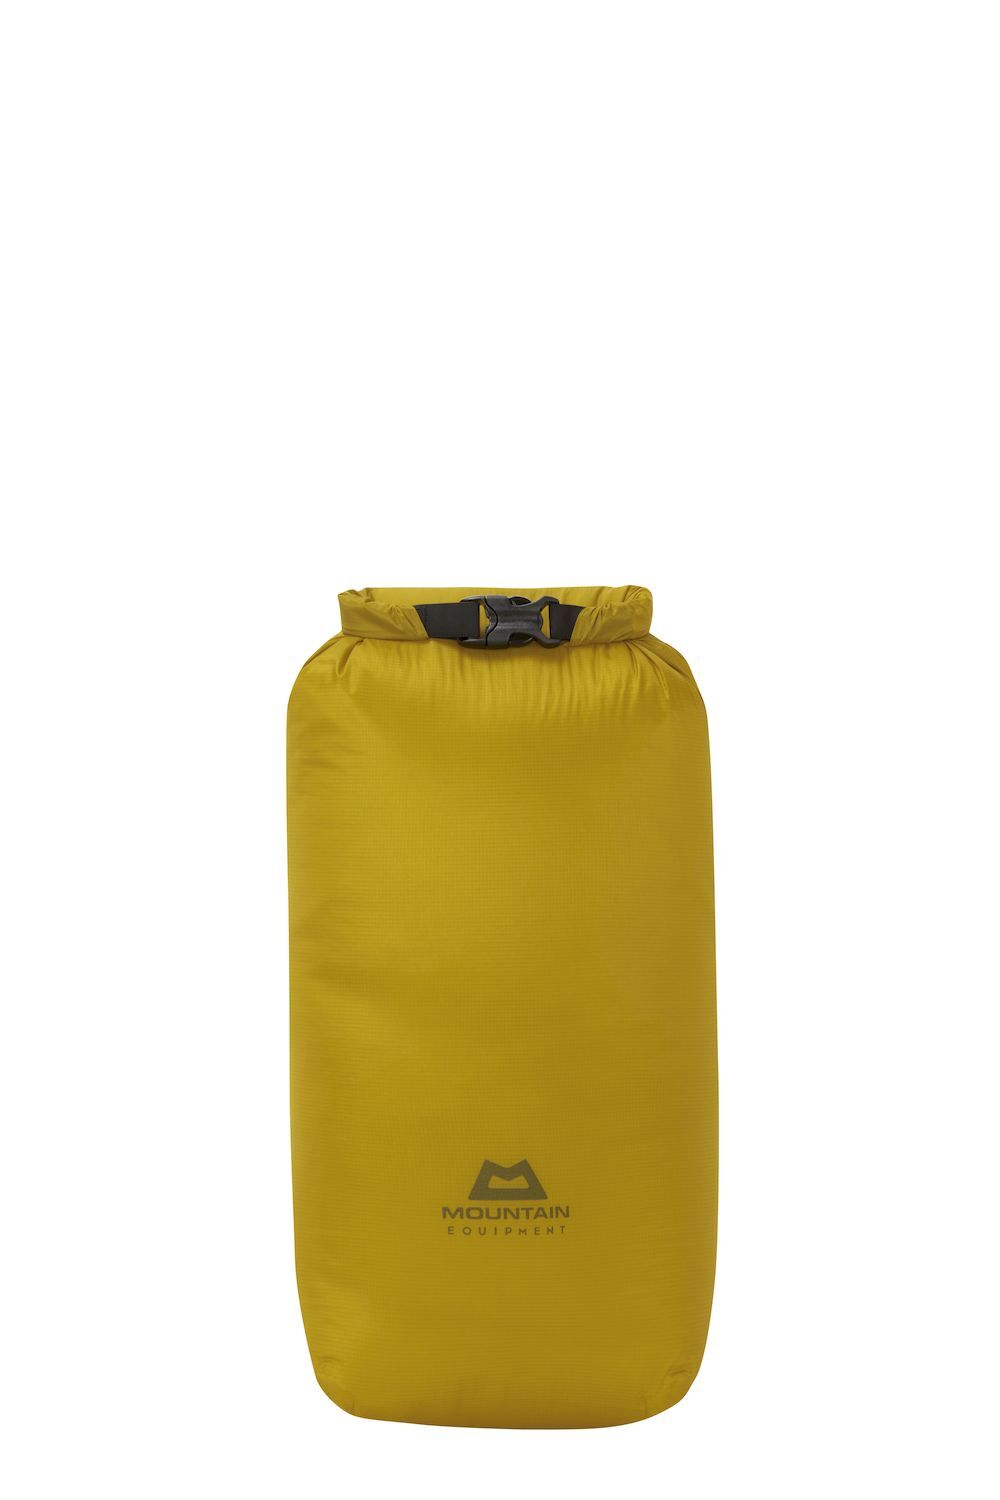 Mountain Equipment Lightweight Drybag 20L - Borsa impermeabile